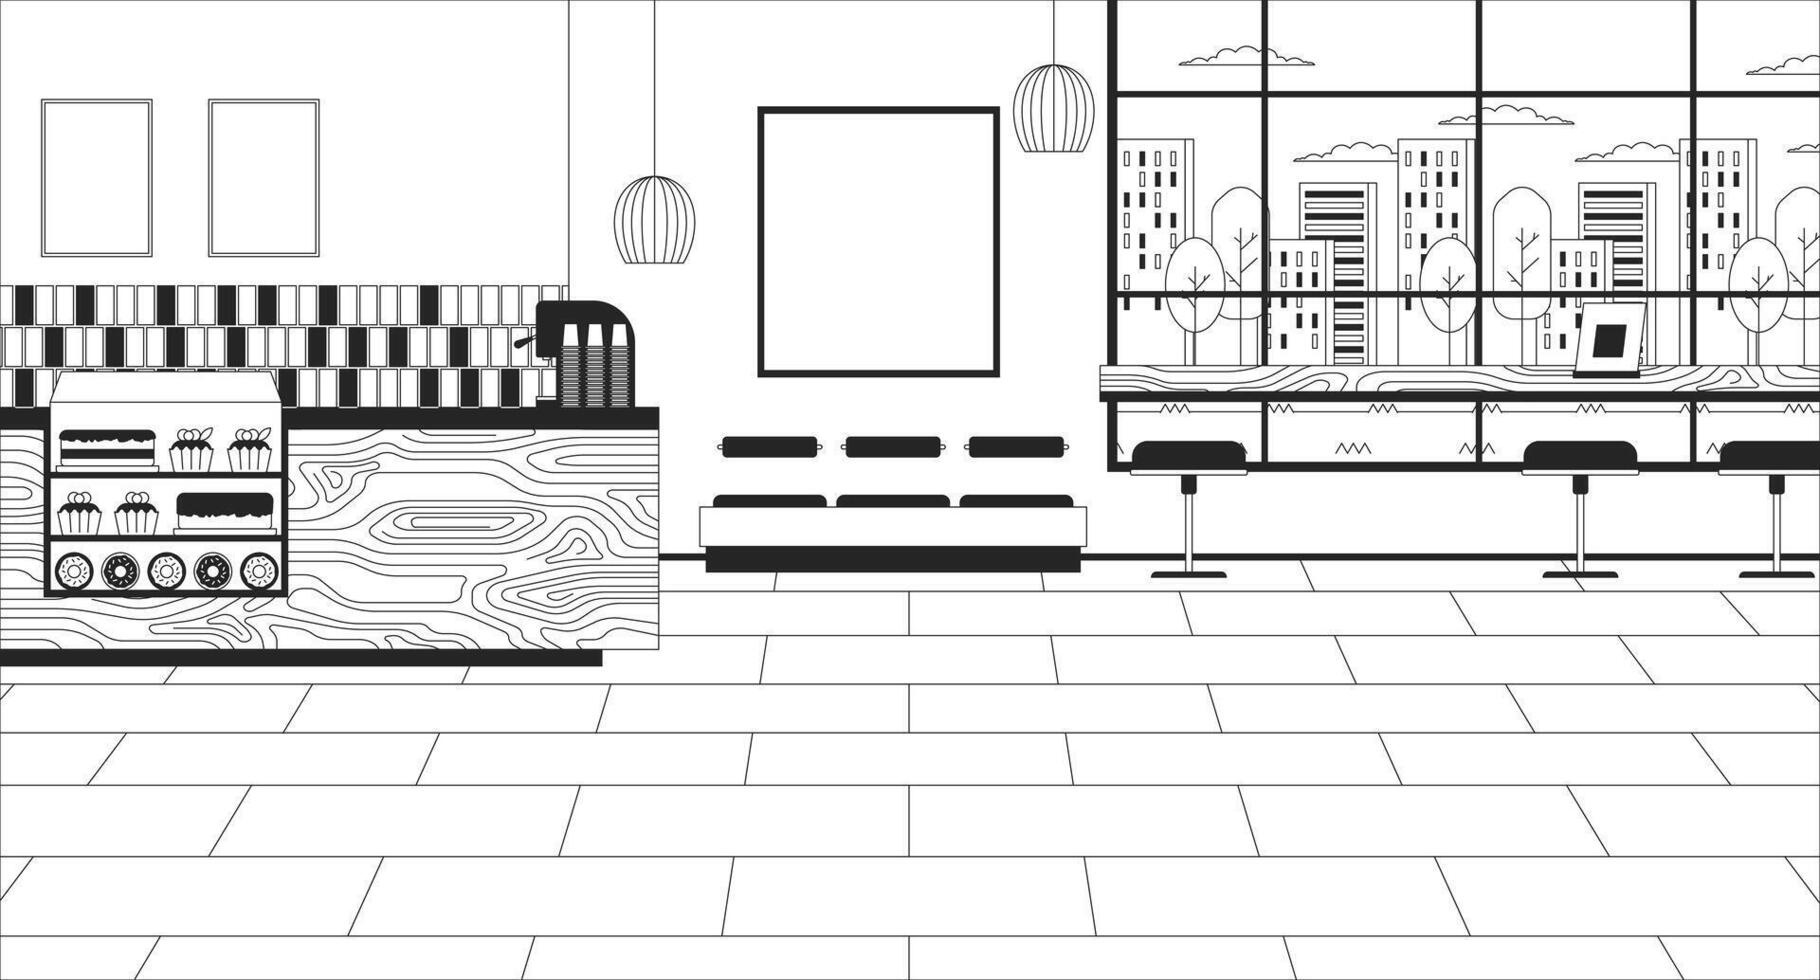 café tienda dentro negro y blanco línea ilustración. cafetería encimera. cafetería interior 2d interior monocromo antecedentes. cena restaurante. café panadería No personas contorno escena vector imagen